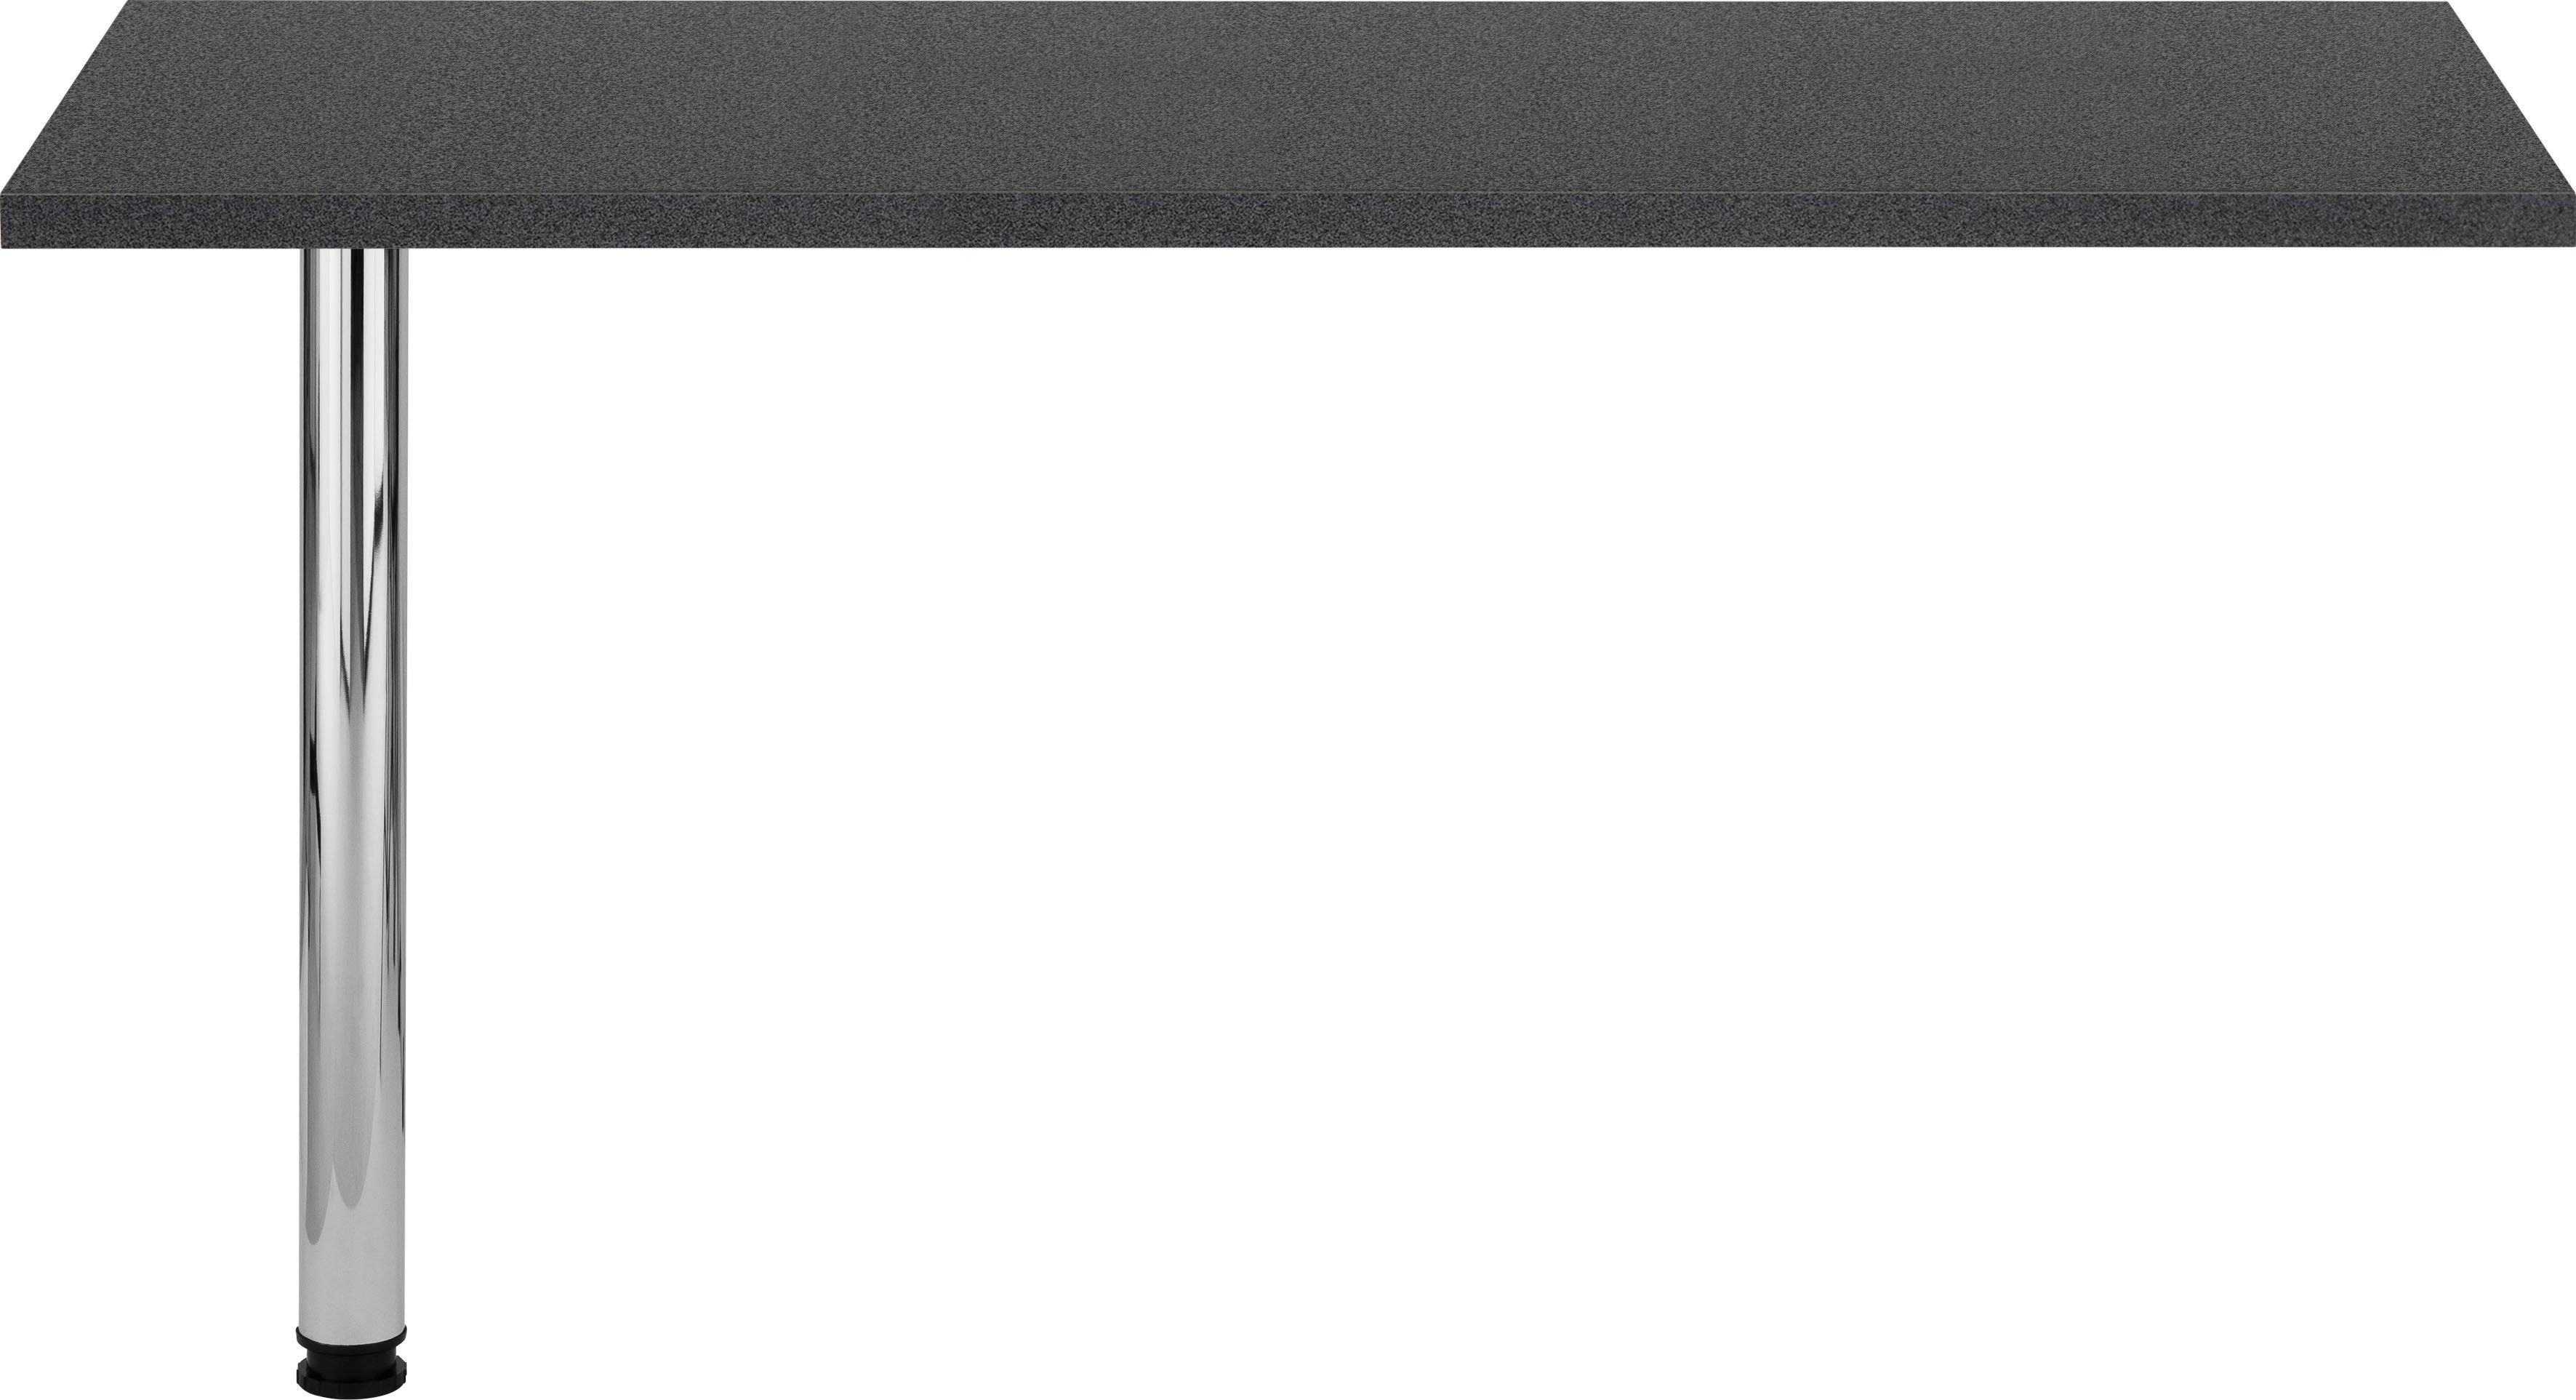 HELD MÖBEL Tresentisch Virginia, 138 cm breit, ideal für kleine Küchen anthrazit | Stehtische